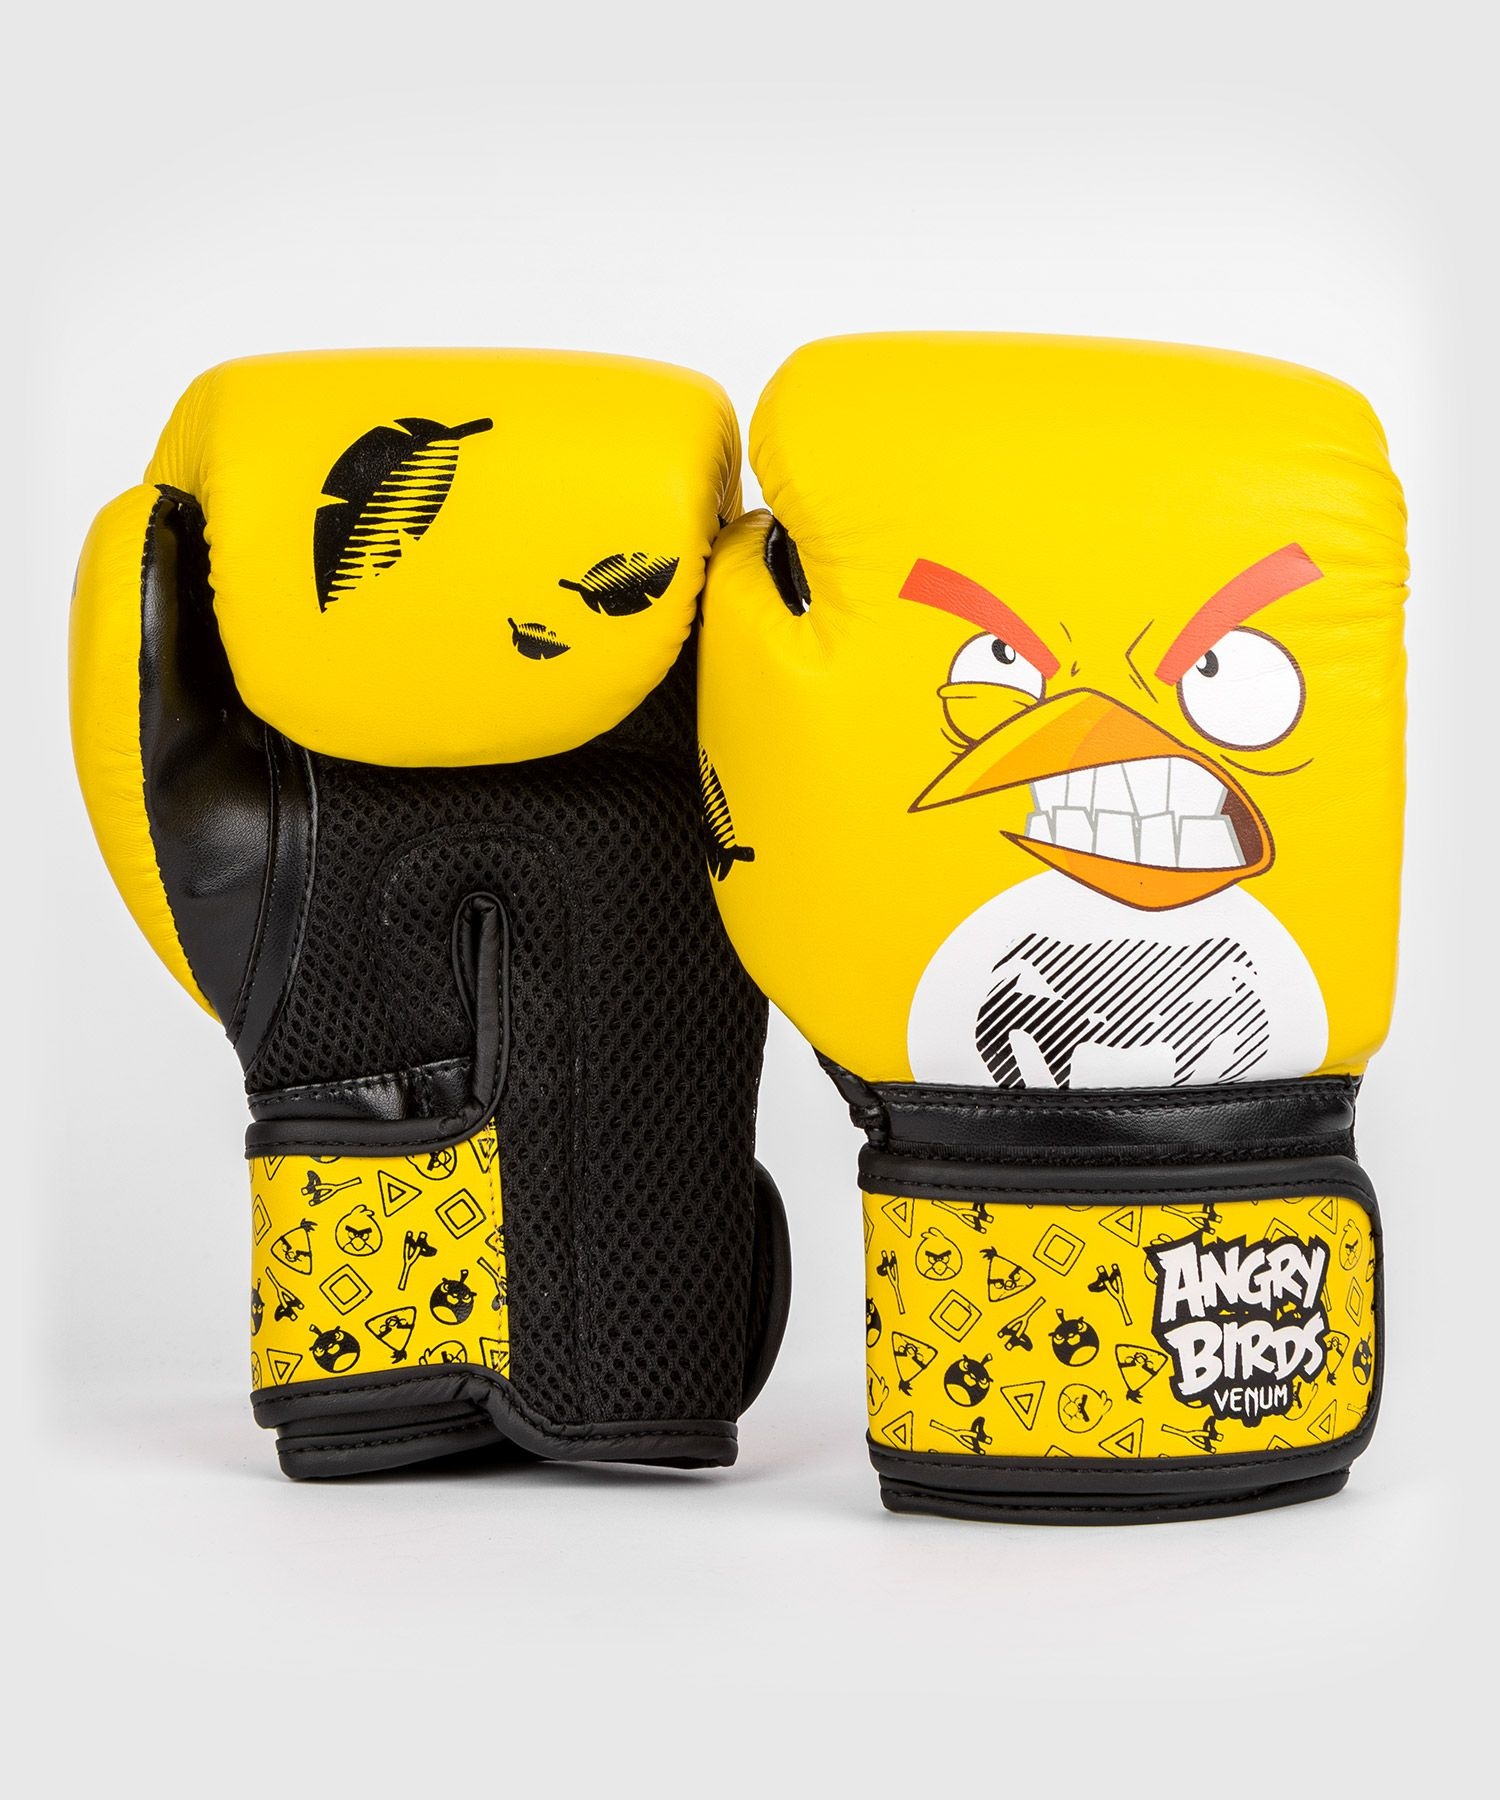 Schwarz Venum FIGHTWEAR Boxhandschuhe Gelb Angry Birds Kinder SHOP - DEUTSCHLAND